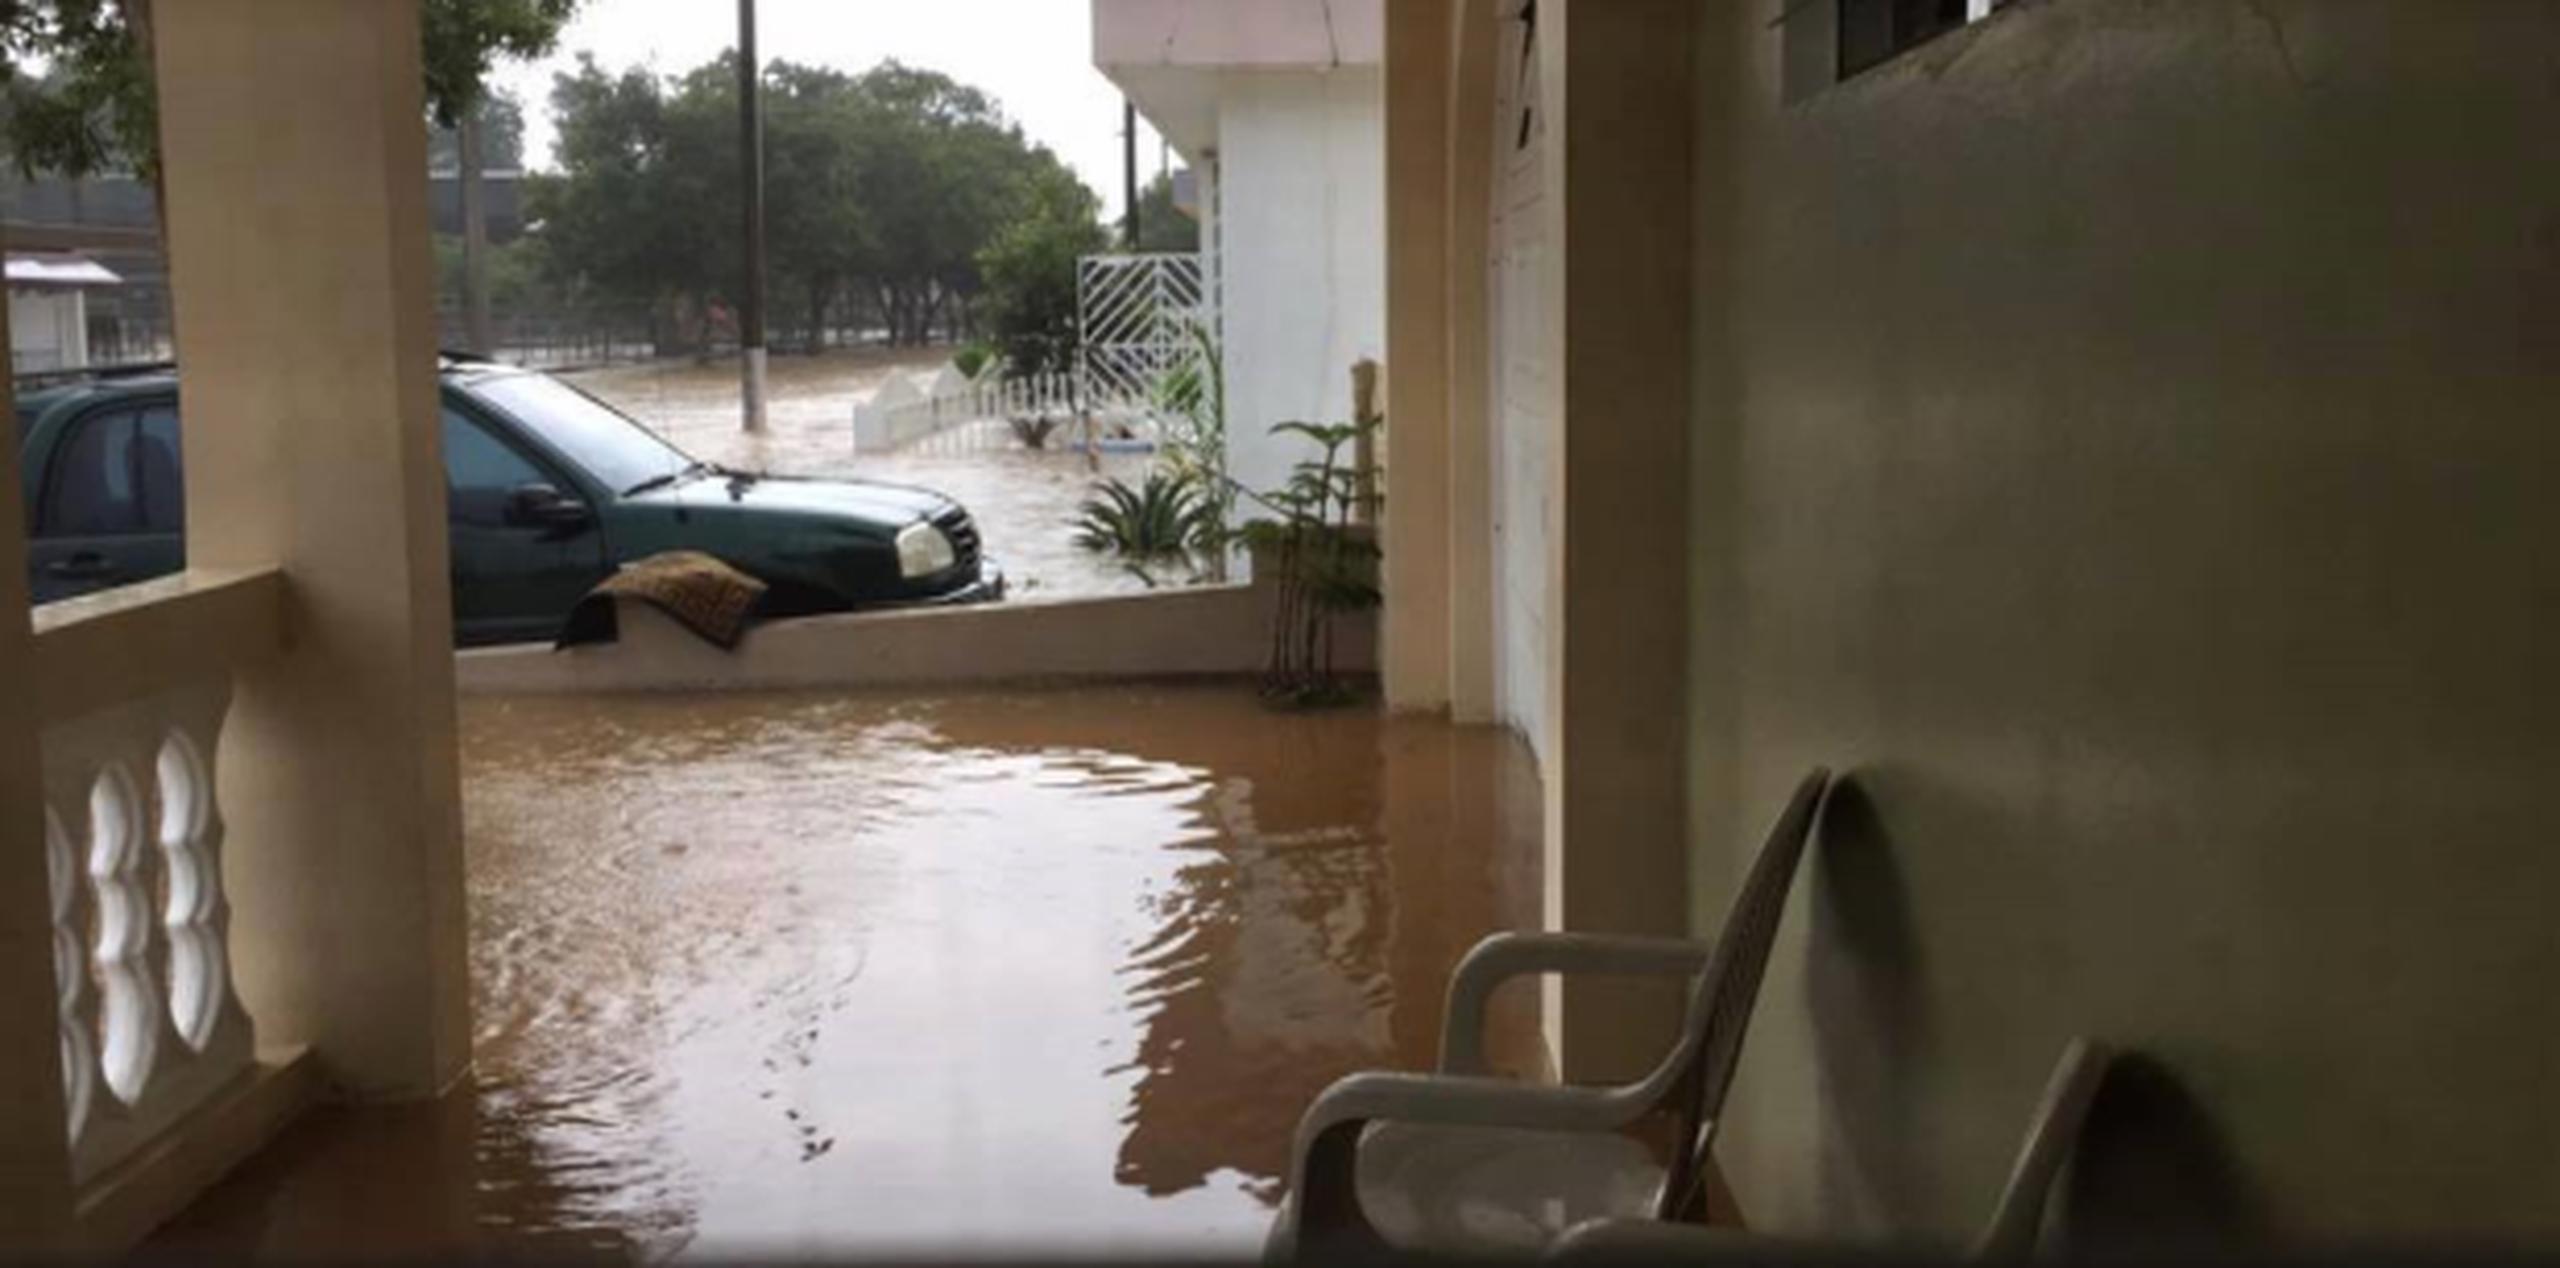 Desde que Alicea Pérez está en funciones es la segunda vez que esta misma zona padece inundaciones tan tremendas, aseguró. (Facebook/Willie Alicea Alcalde Aibonito)